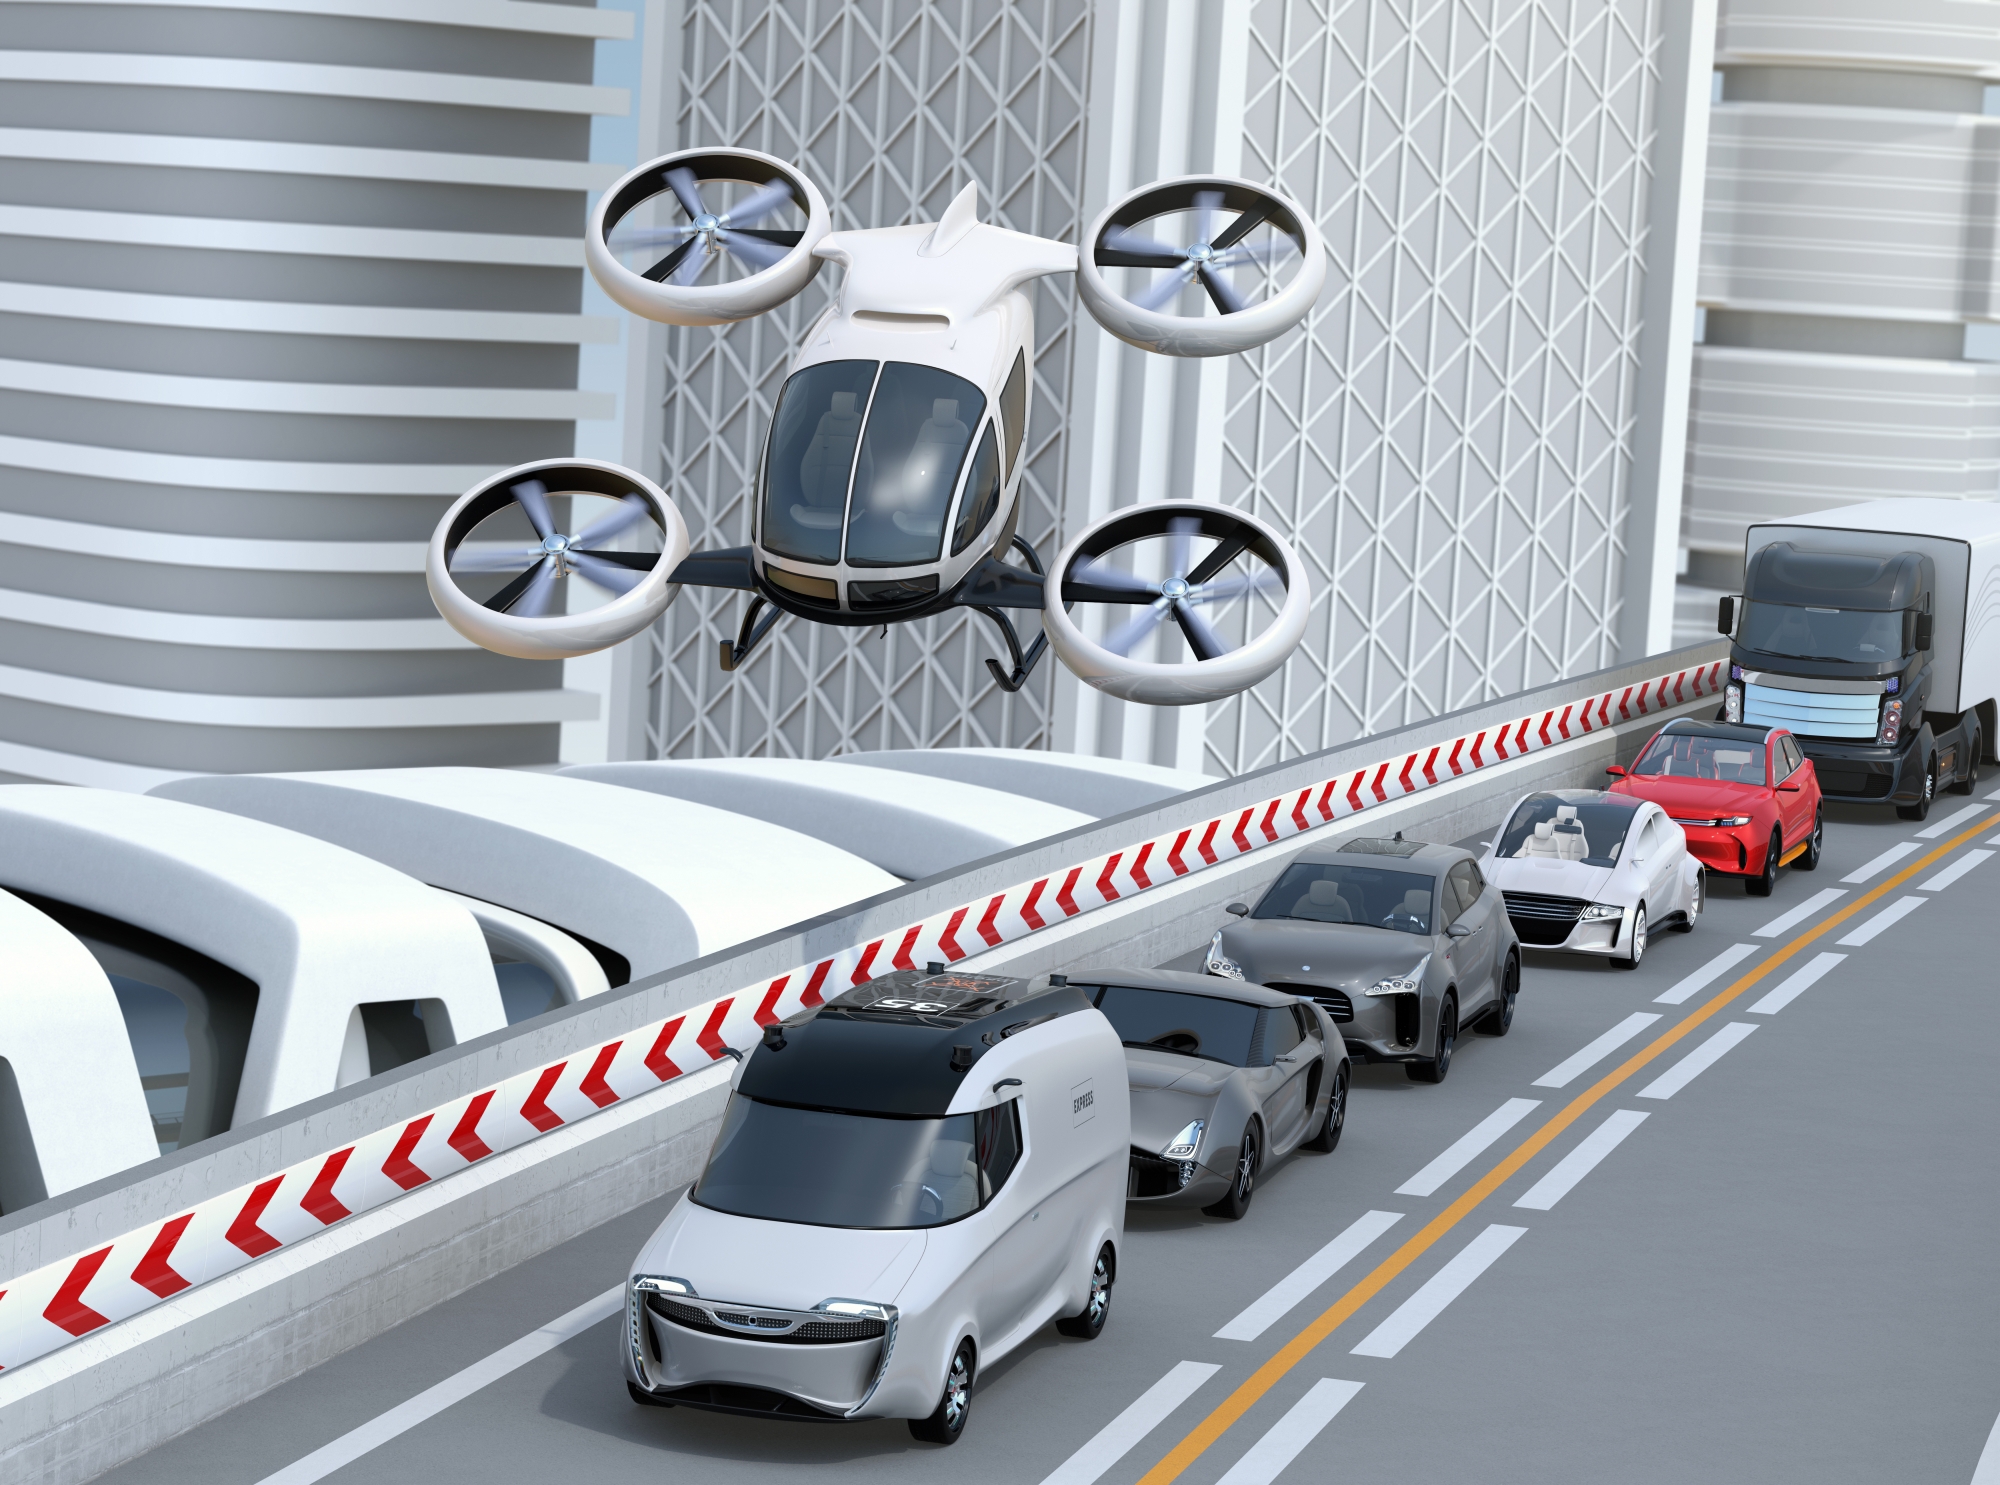 L'étude de faisabilité sur les drones taxis a été faite dans le cadre de l'initiative de mobilité urbaine aérienne. (Illustration)